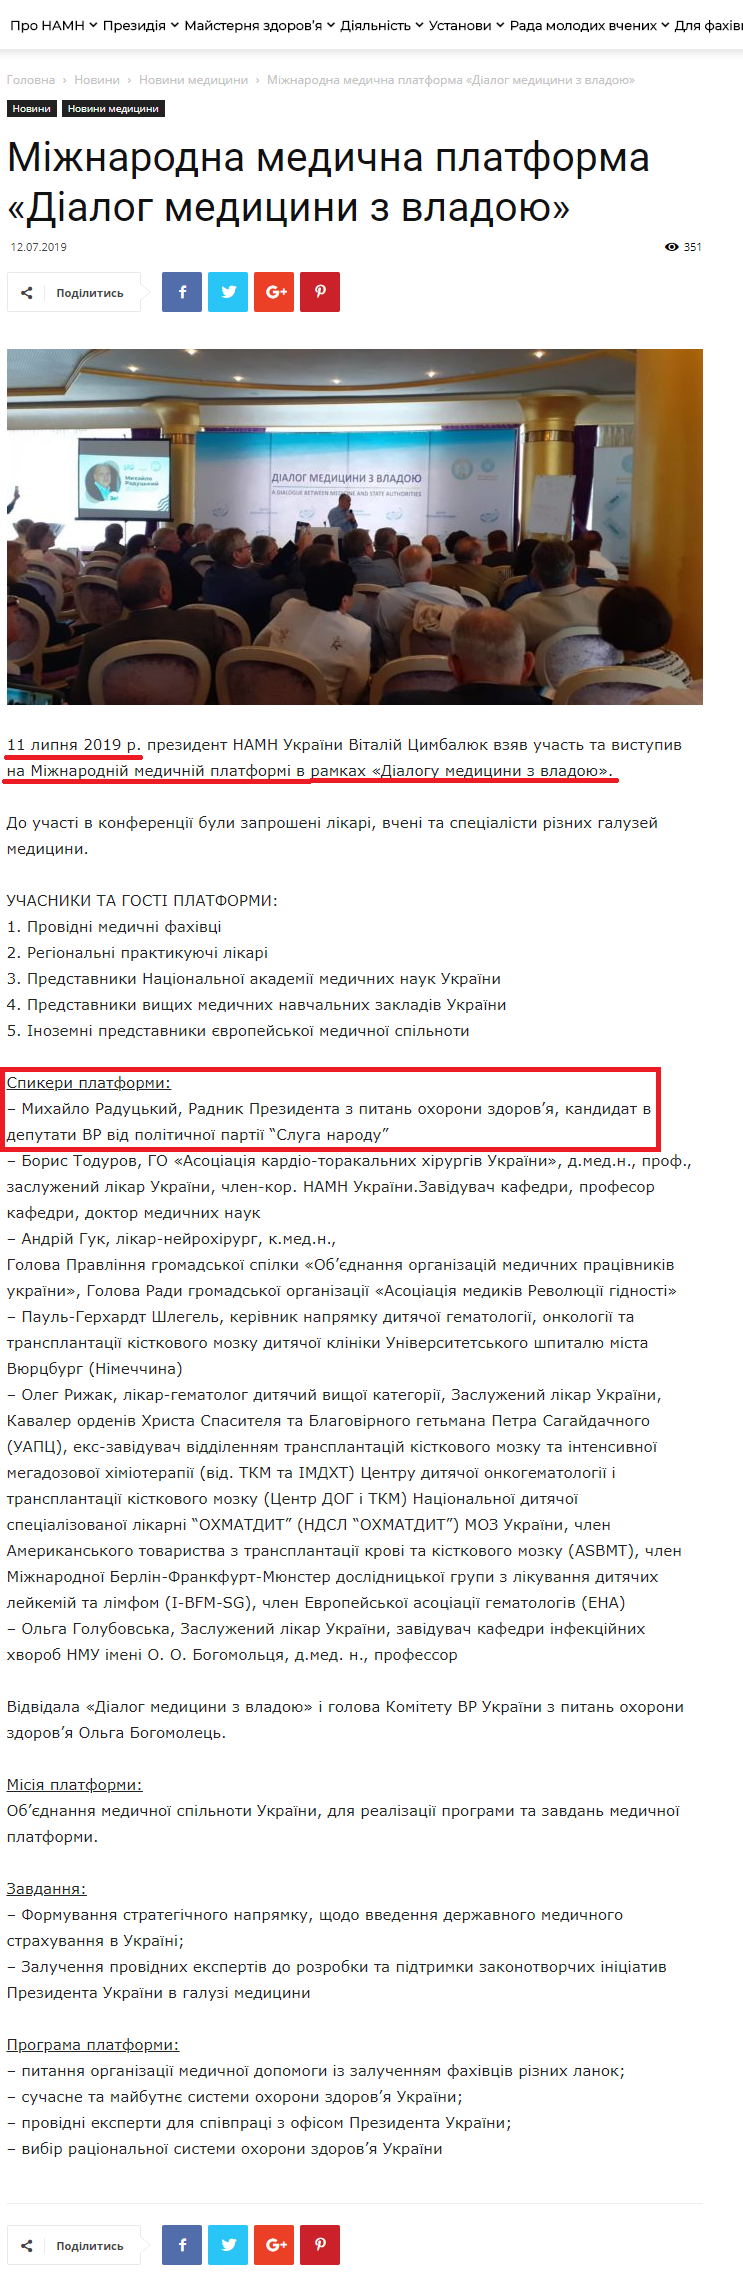 http://amnu.gov.ua/mizhnarodna-medychna-platforma-dialog-medyczyny-z-vladoyu/